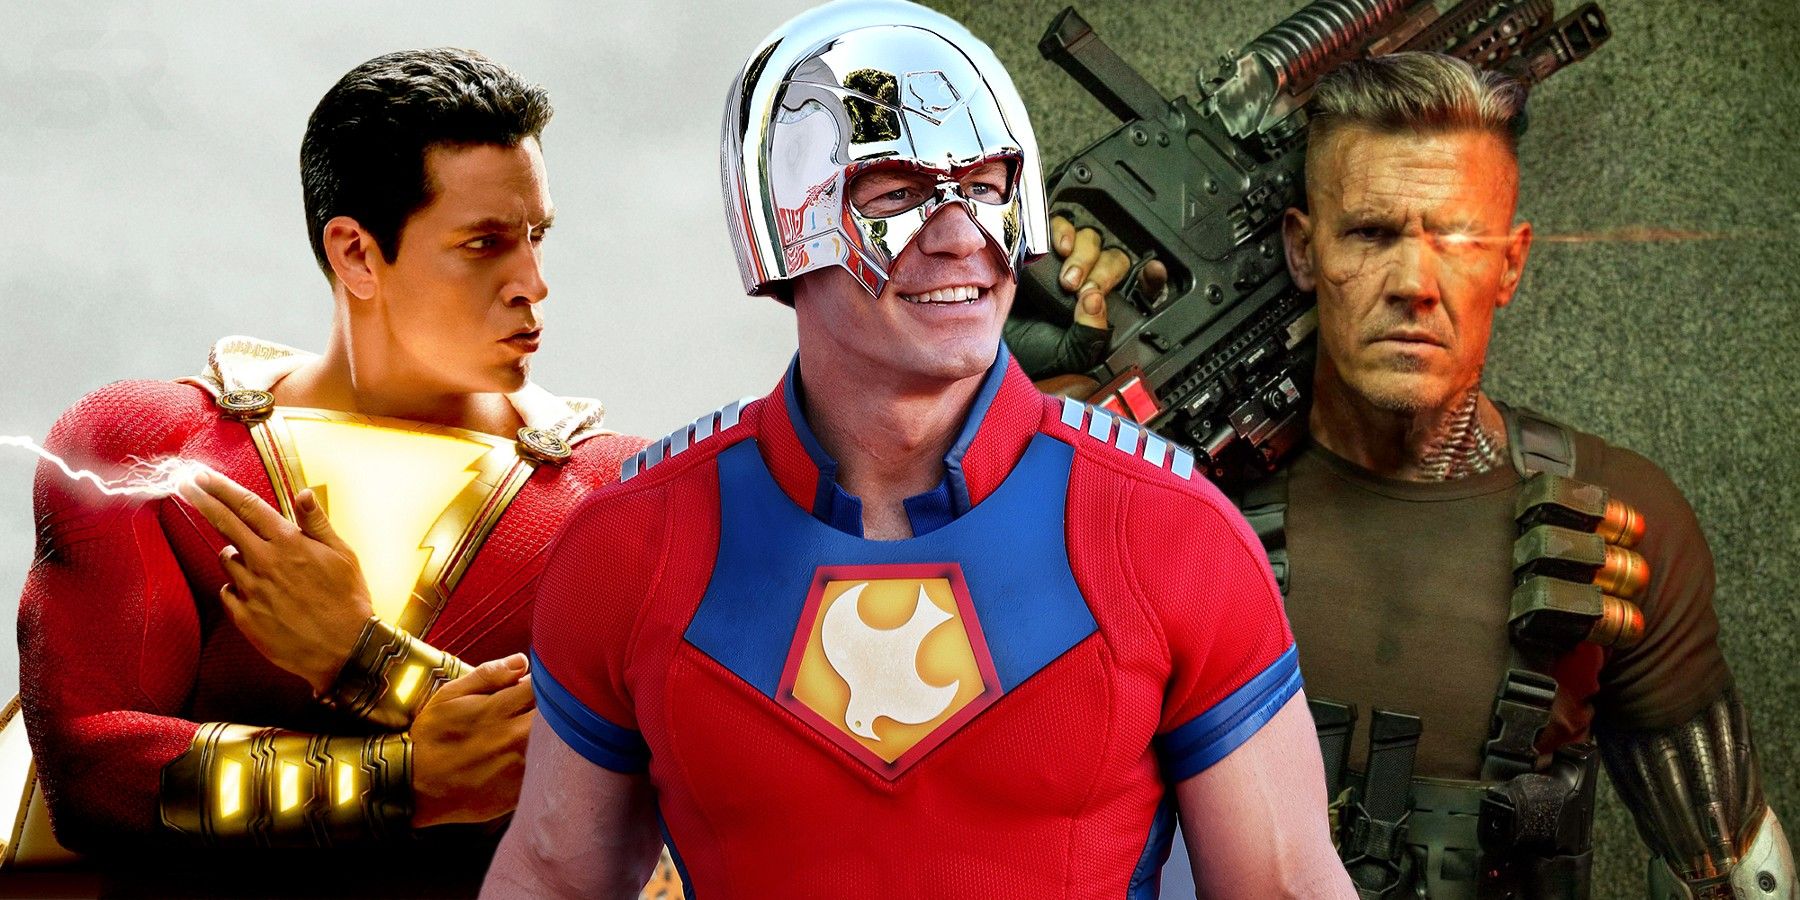 Peacemaker Star John Cena Making Marvel Debut in Deadpool 3